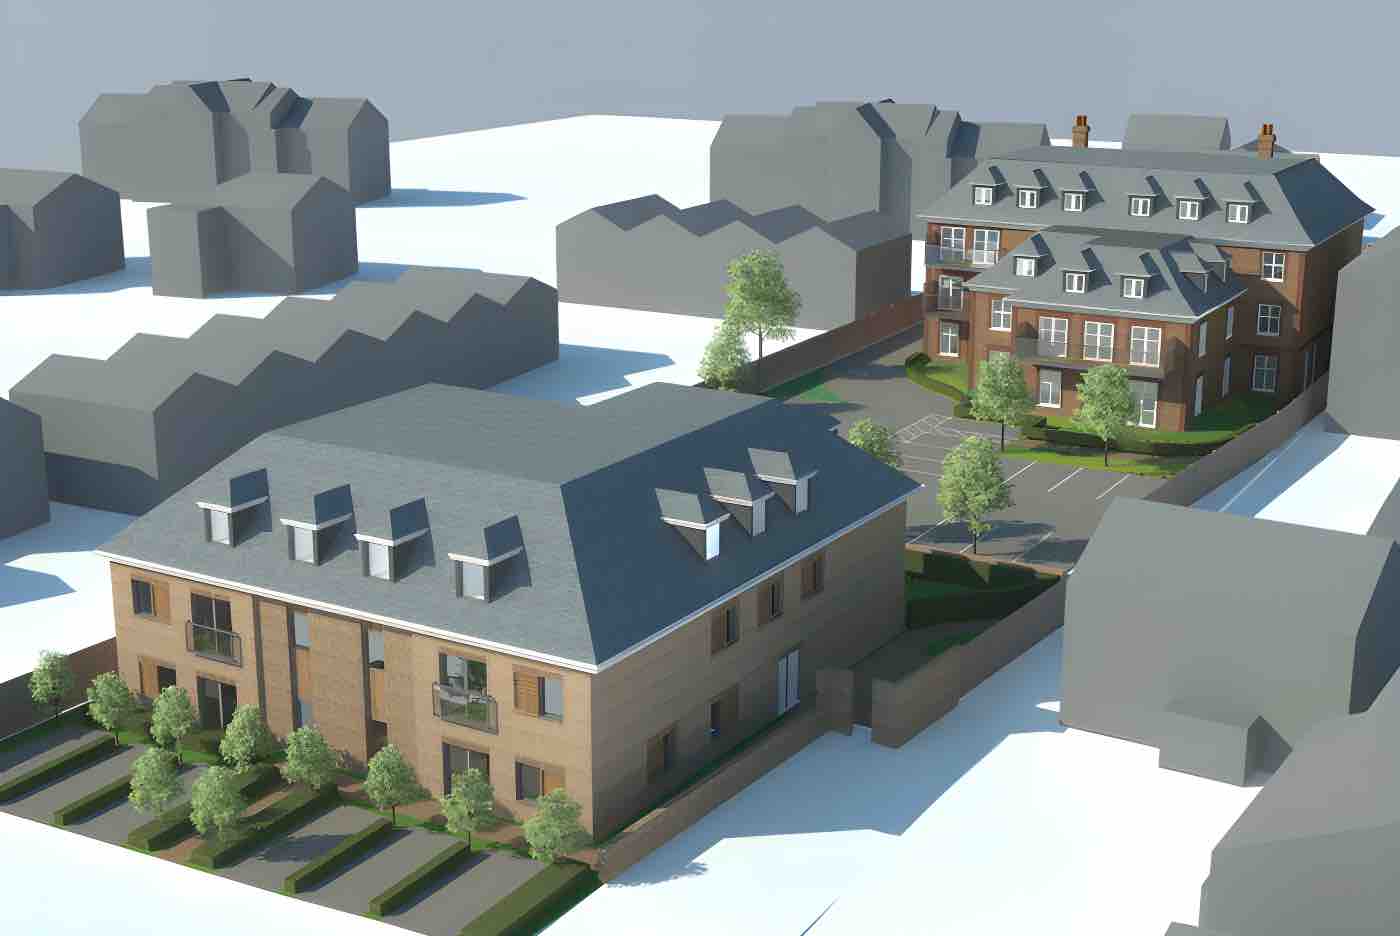 25 brand-new apartments for Bushey, Hertfordshire